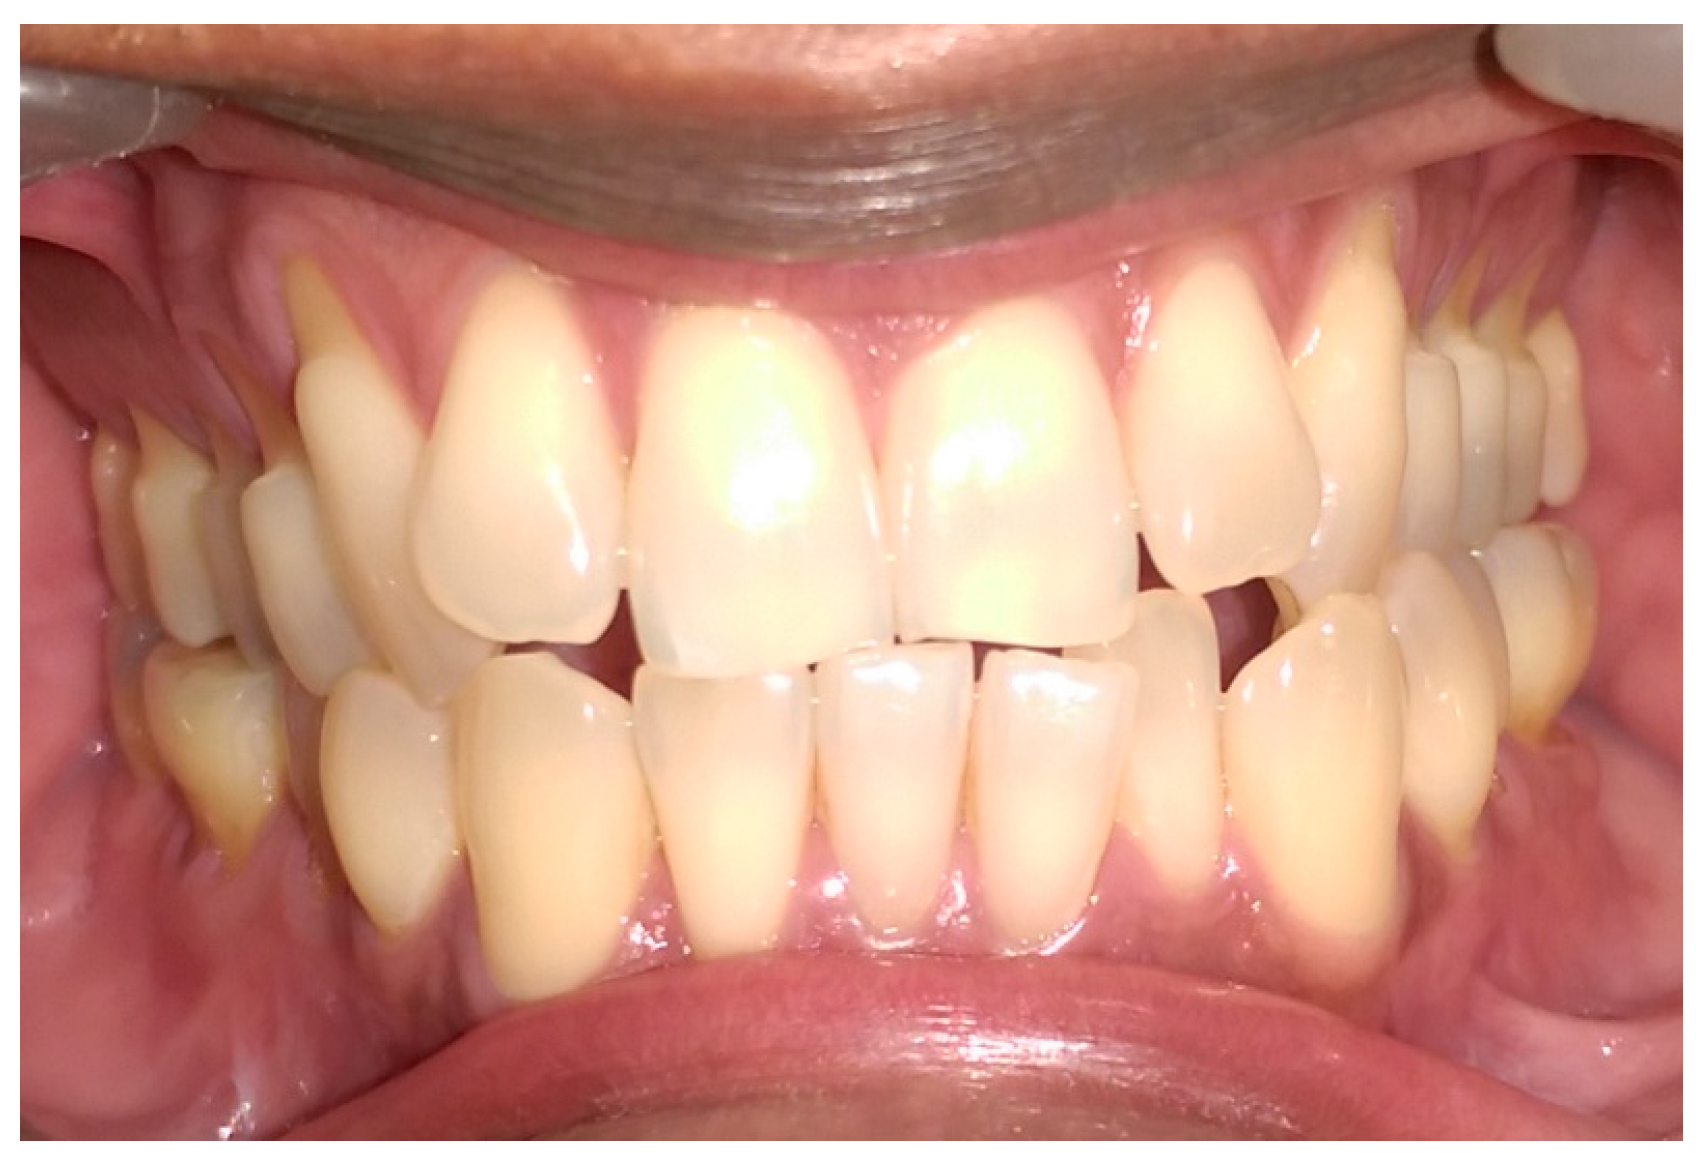 Dentistry 05 00033 g001